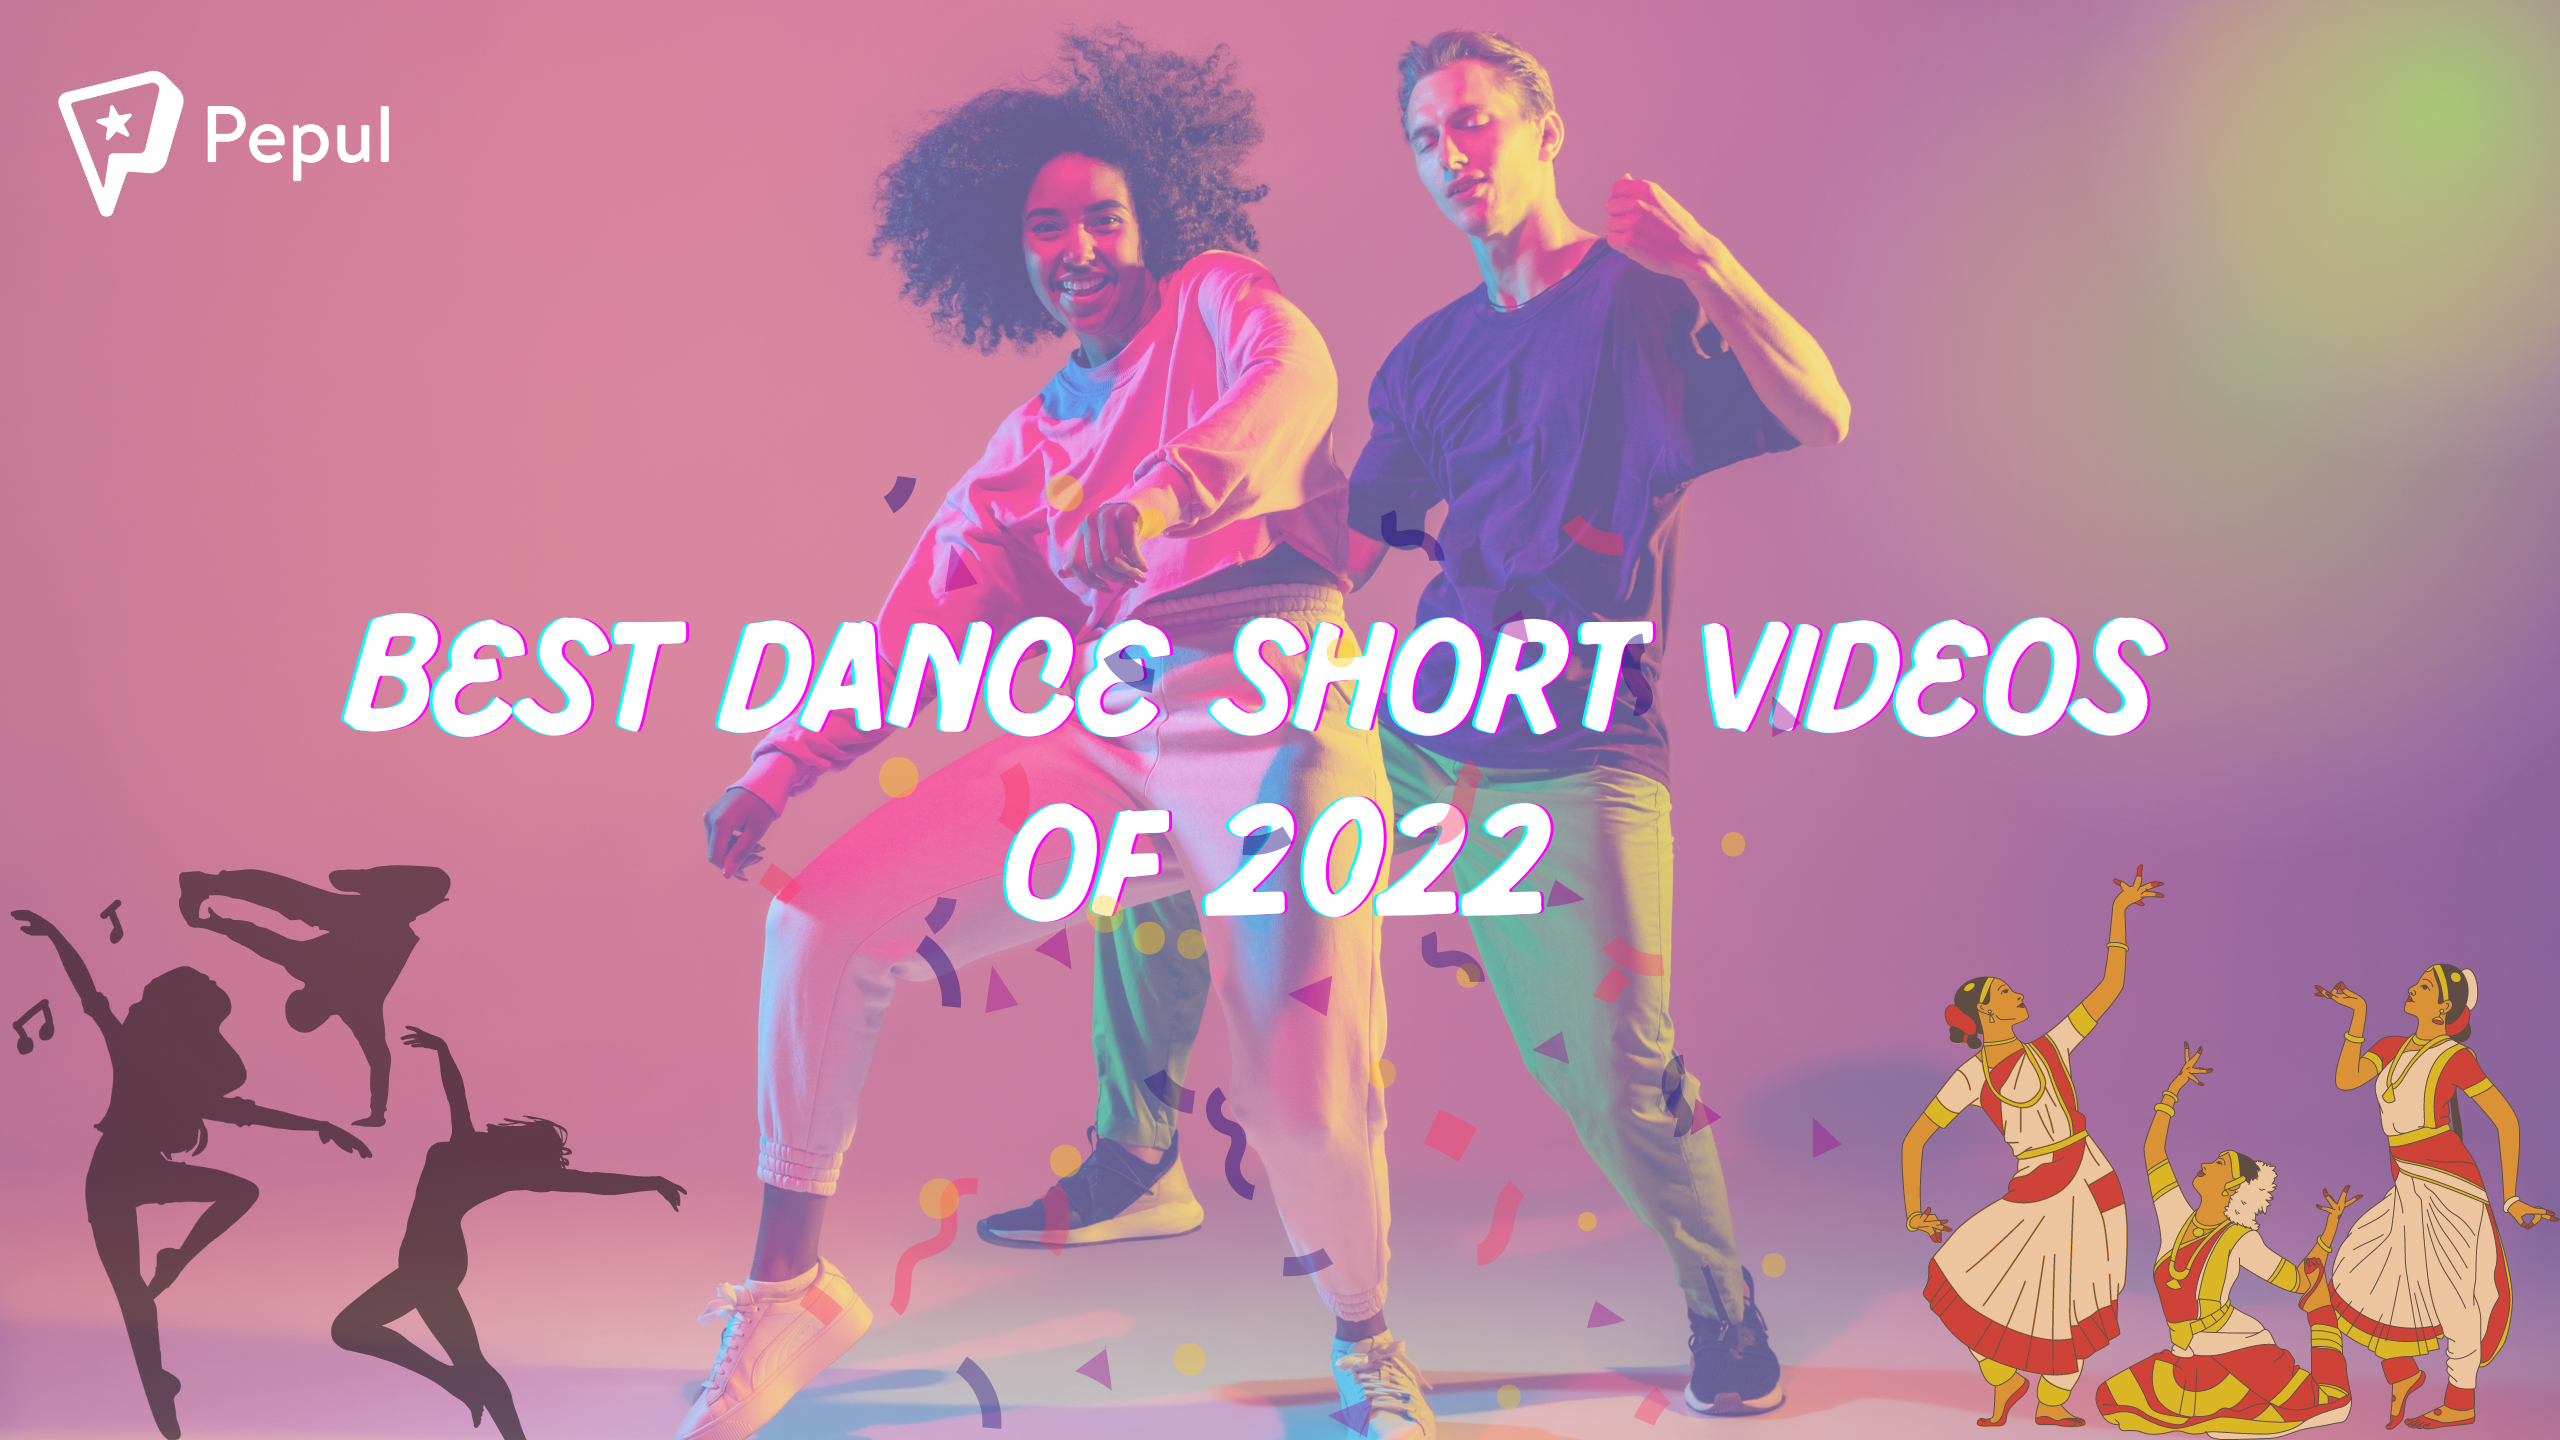 Top 5 Best Dance Short Videos of 2022